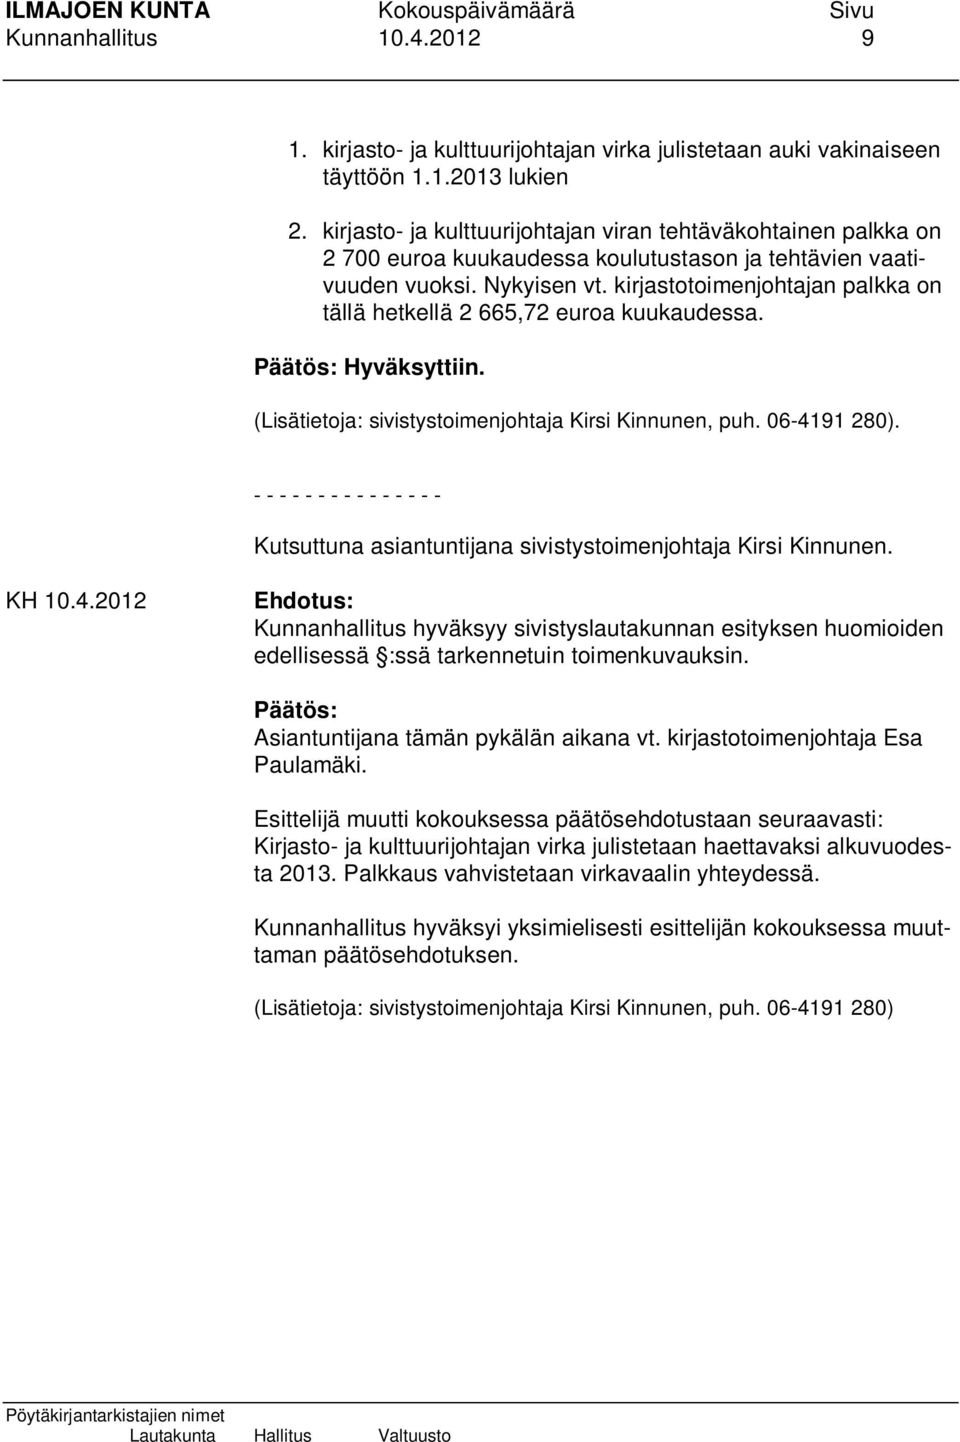 kirjastotoimenjohtajan palkka on tällä hetkellä 2 665,72 euroa kuukaudessa. Hyväksyttiin. (Lisätietoja: sivistystoimenjohtaja Kirsi Kinnunen, puh. 06-4191 280).